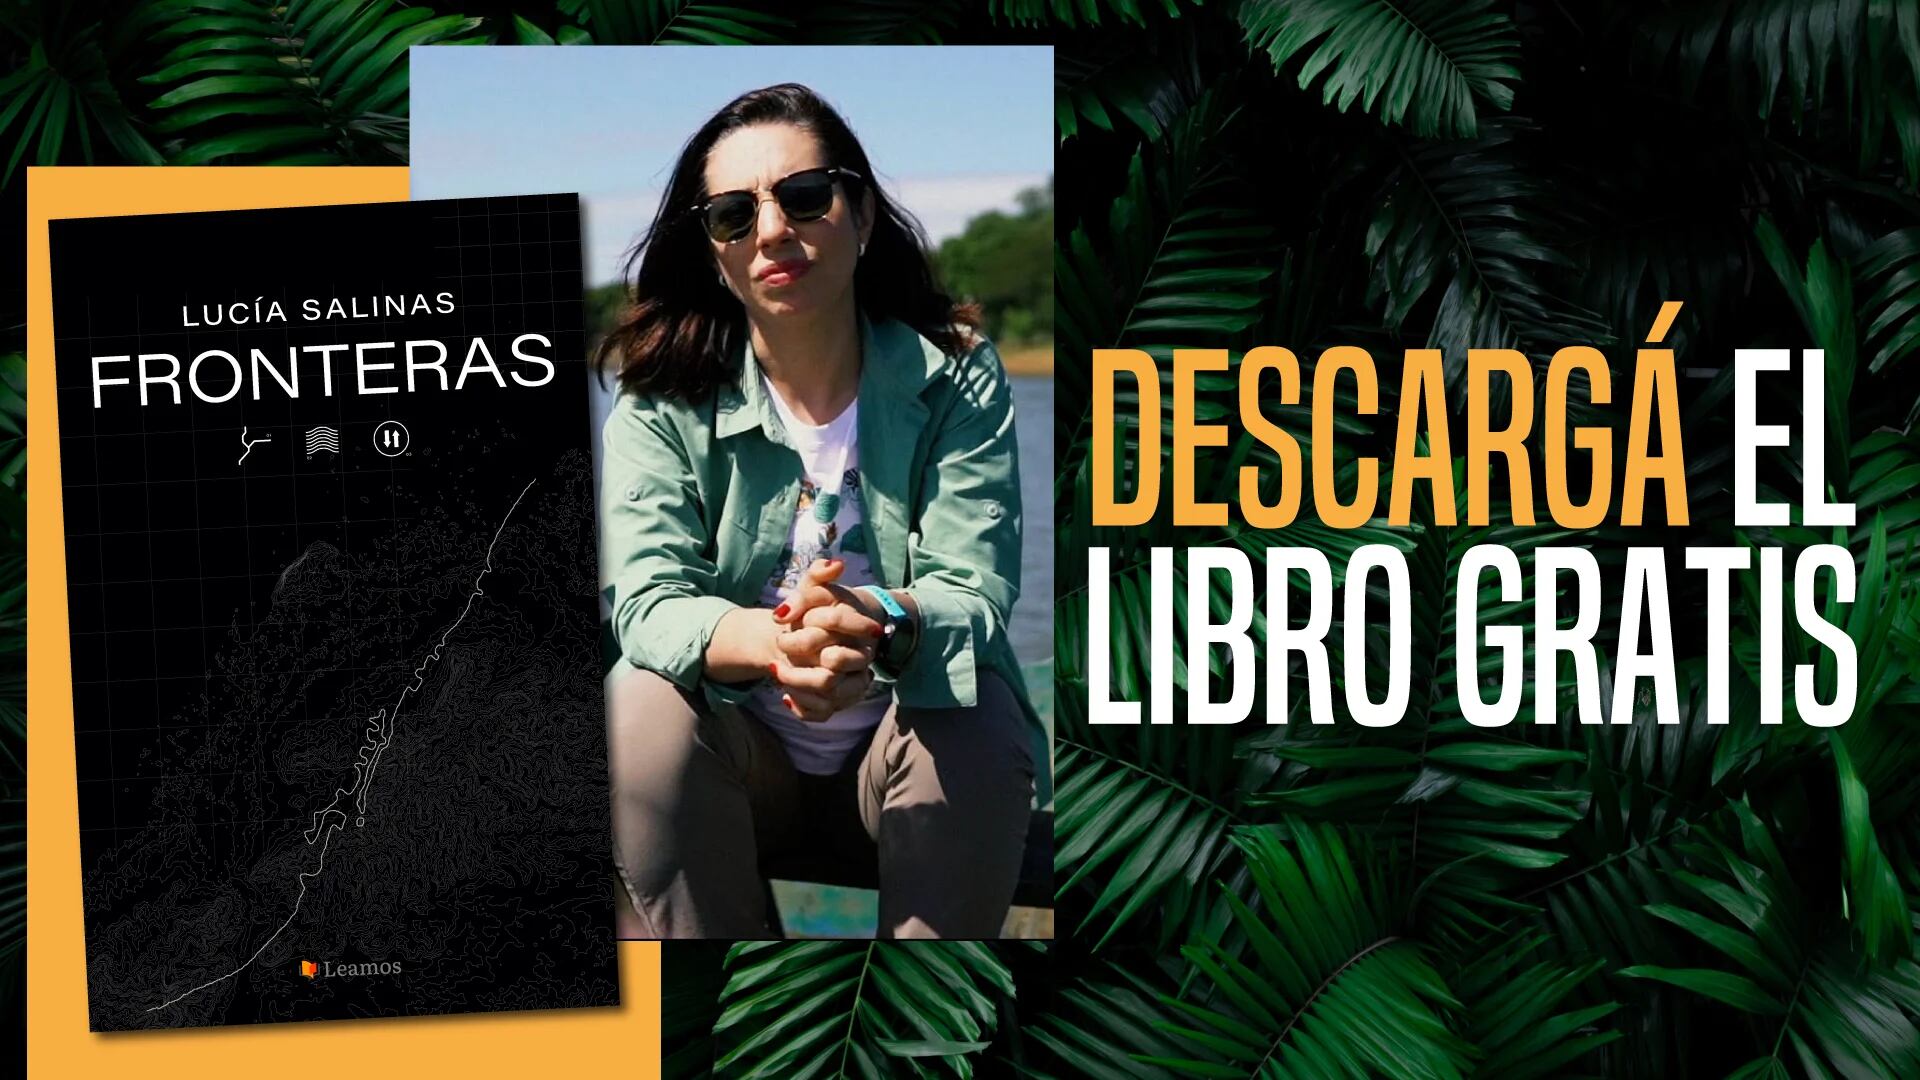 Lucía Salinas y su libro "Fronteras", gratis.